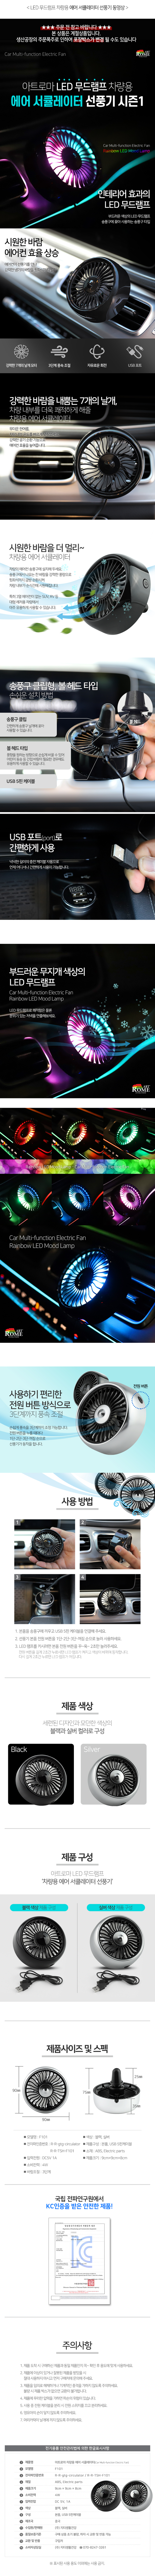 Car-Multi-function-Electric-Fan.jpg